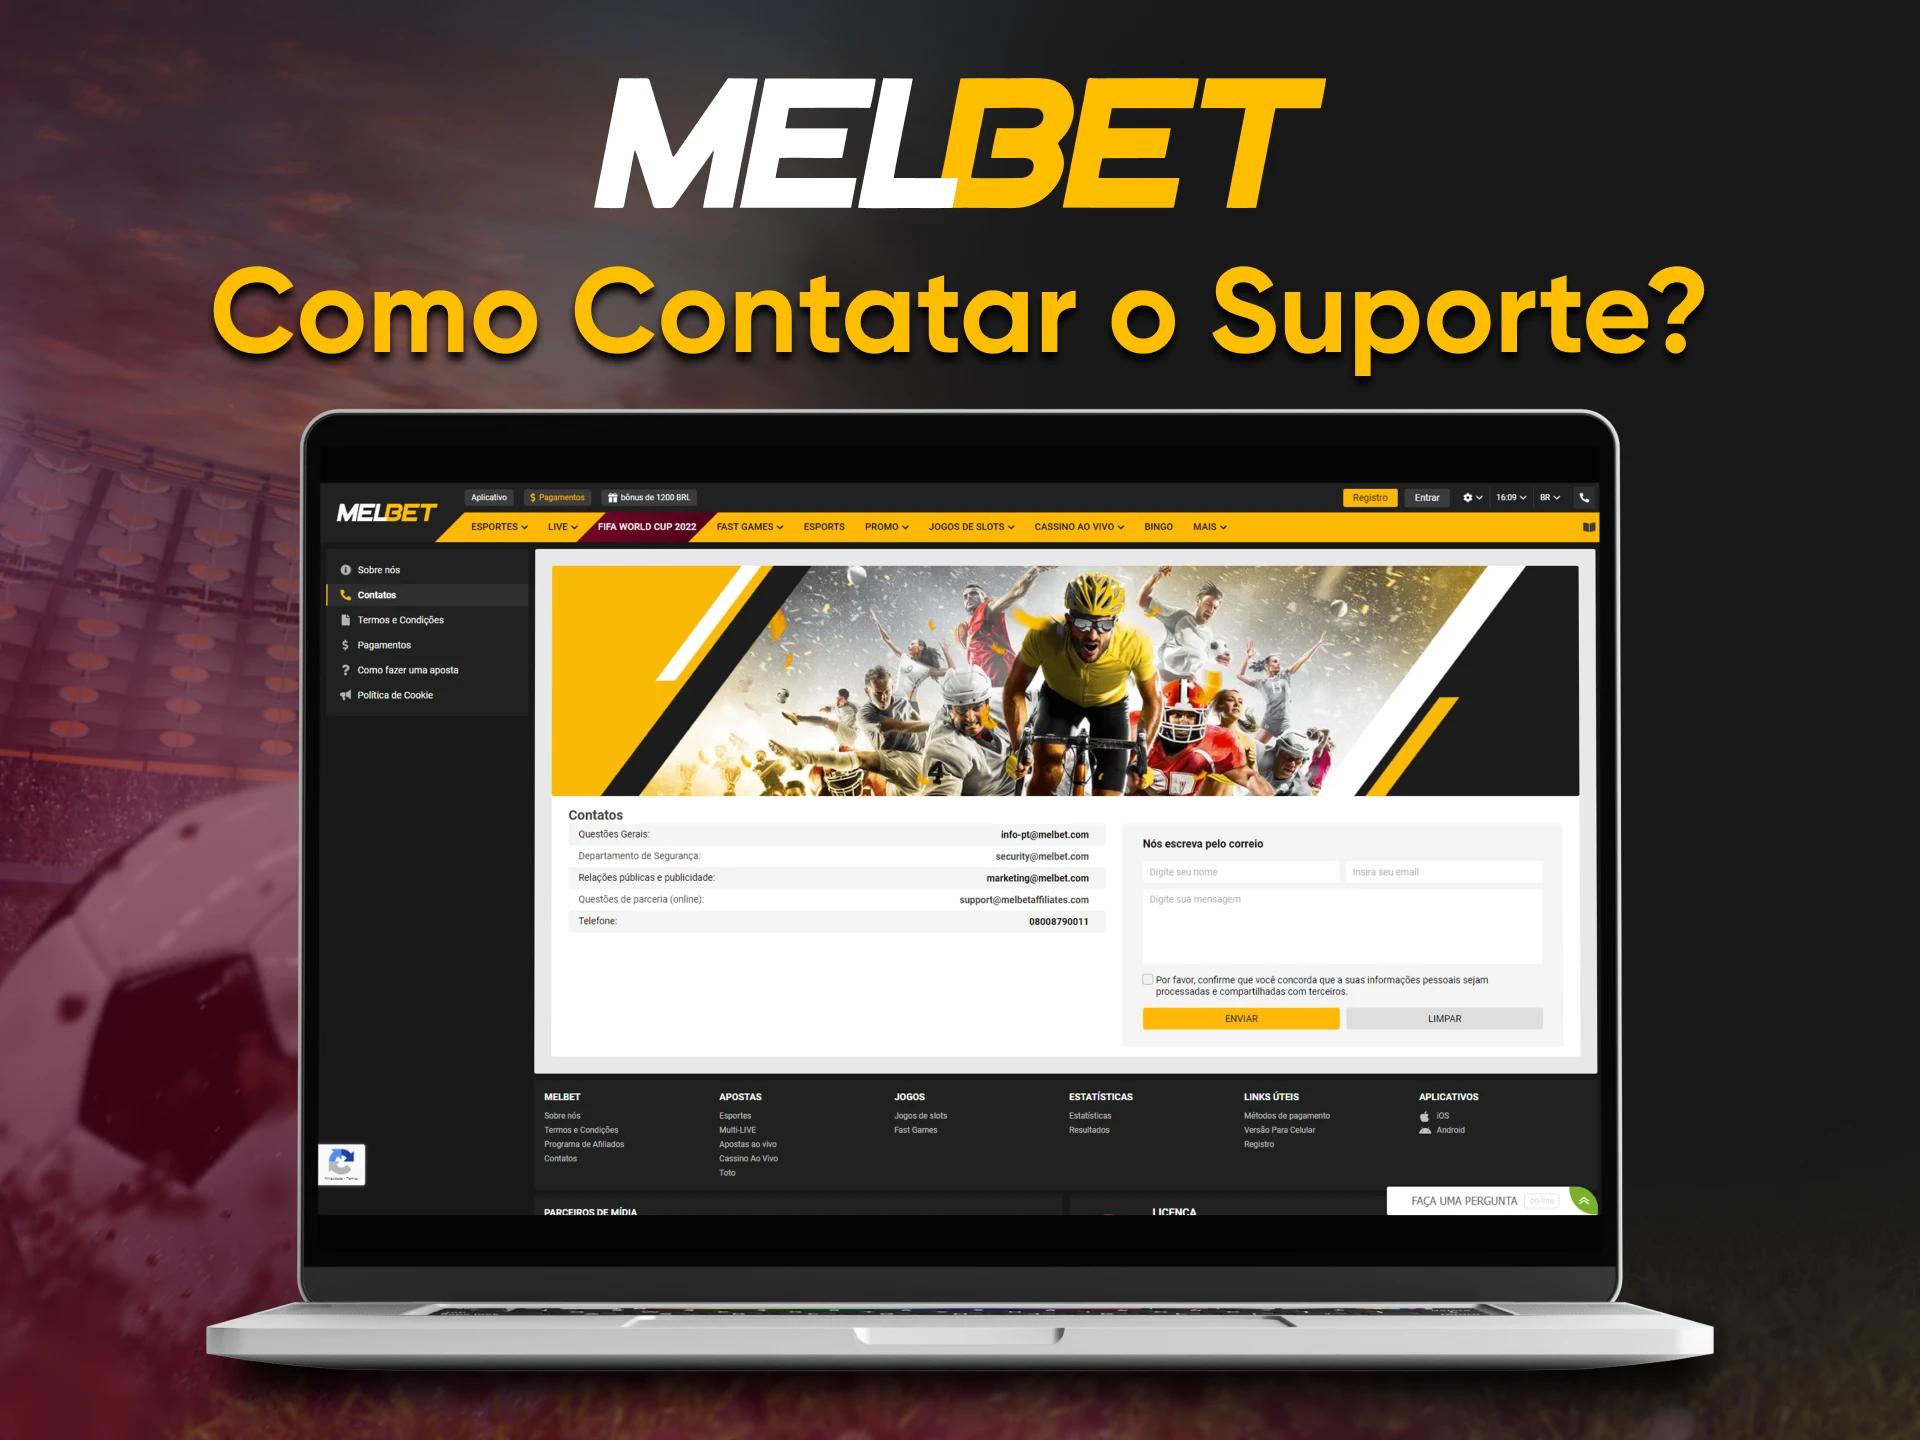 Visite a secção "Contactos" para enviar uma mensagem à equipa Melbet.